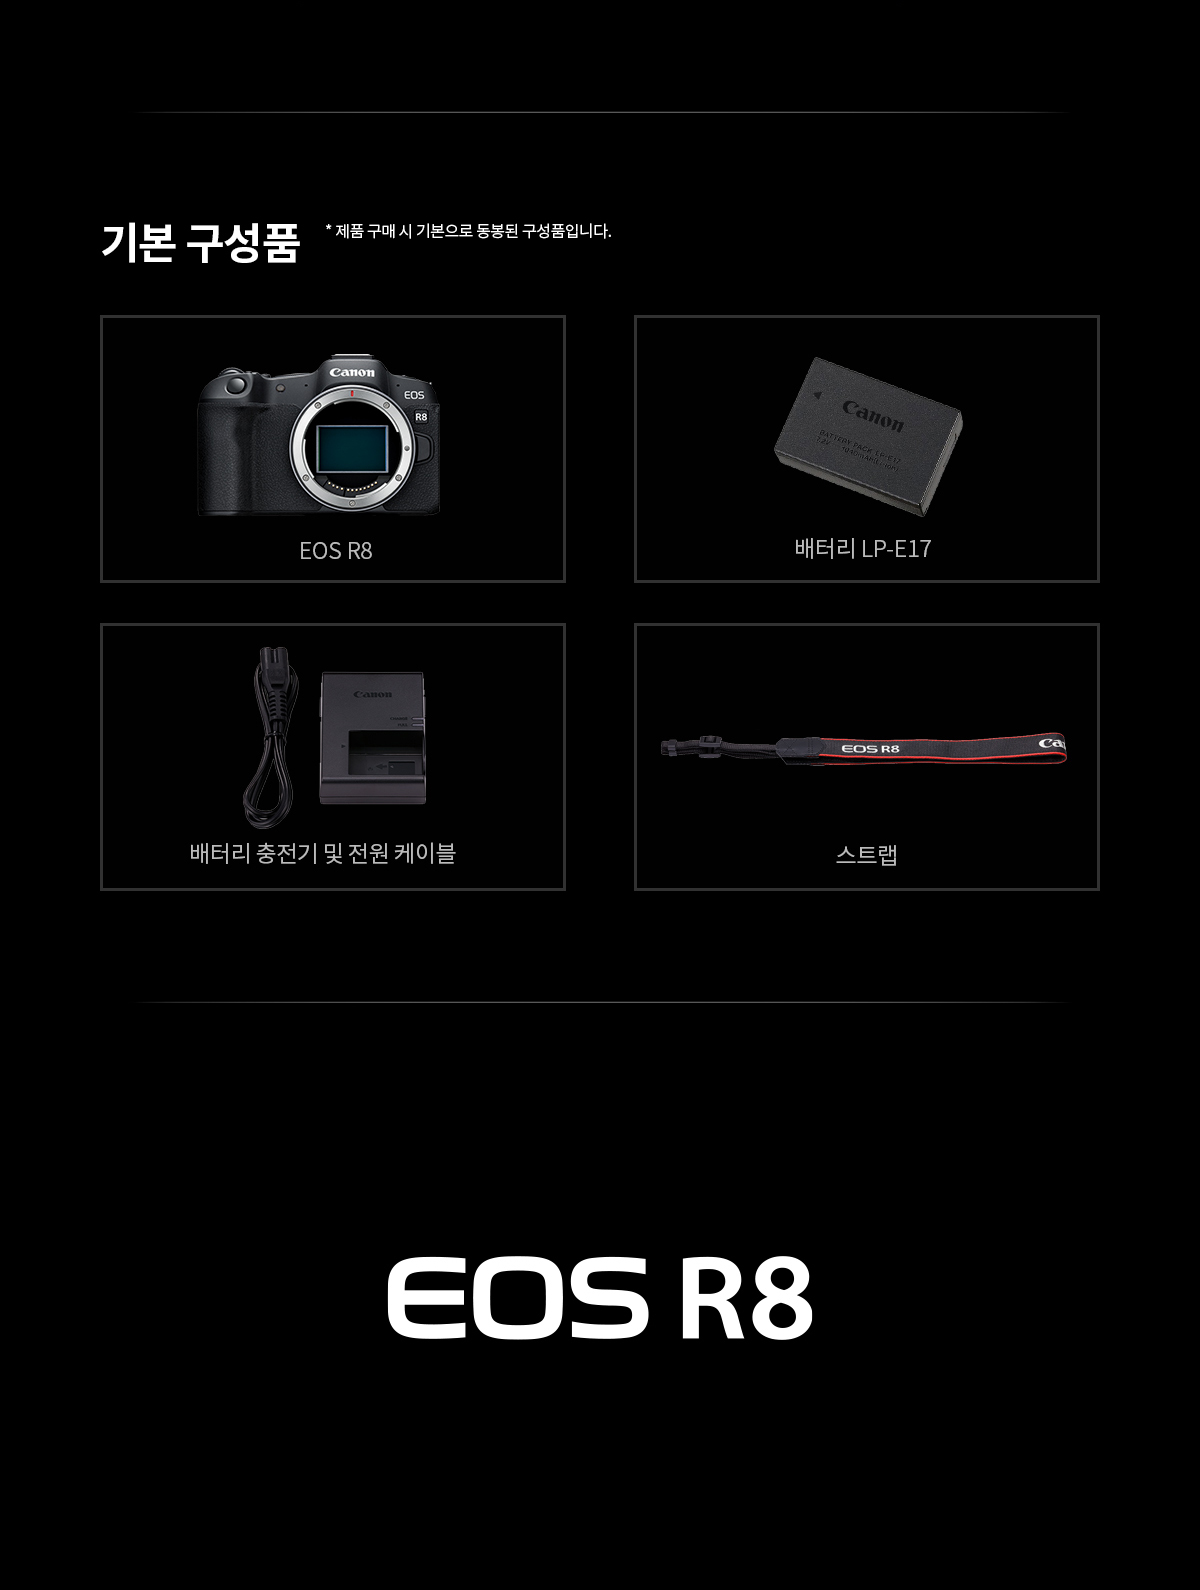 EOS R8 (body)